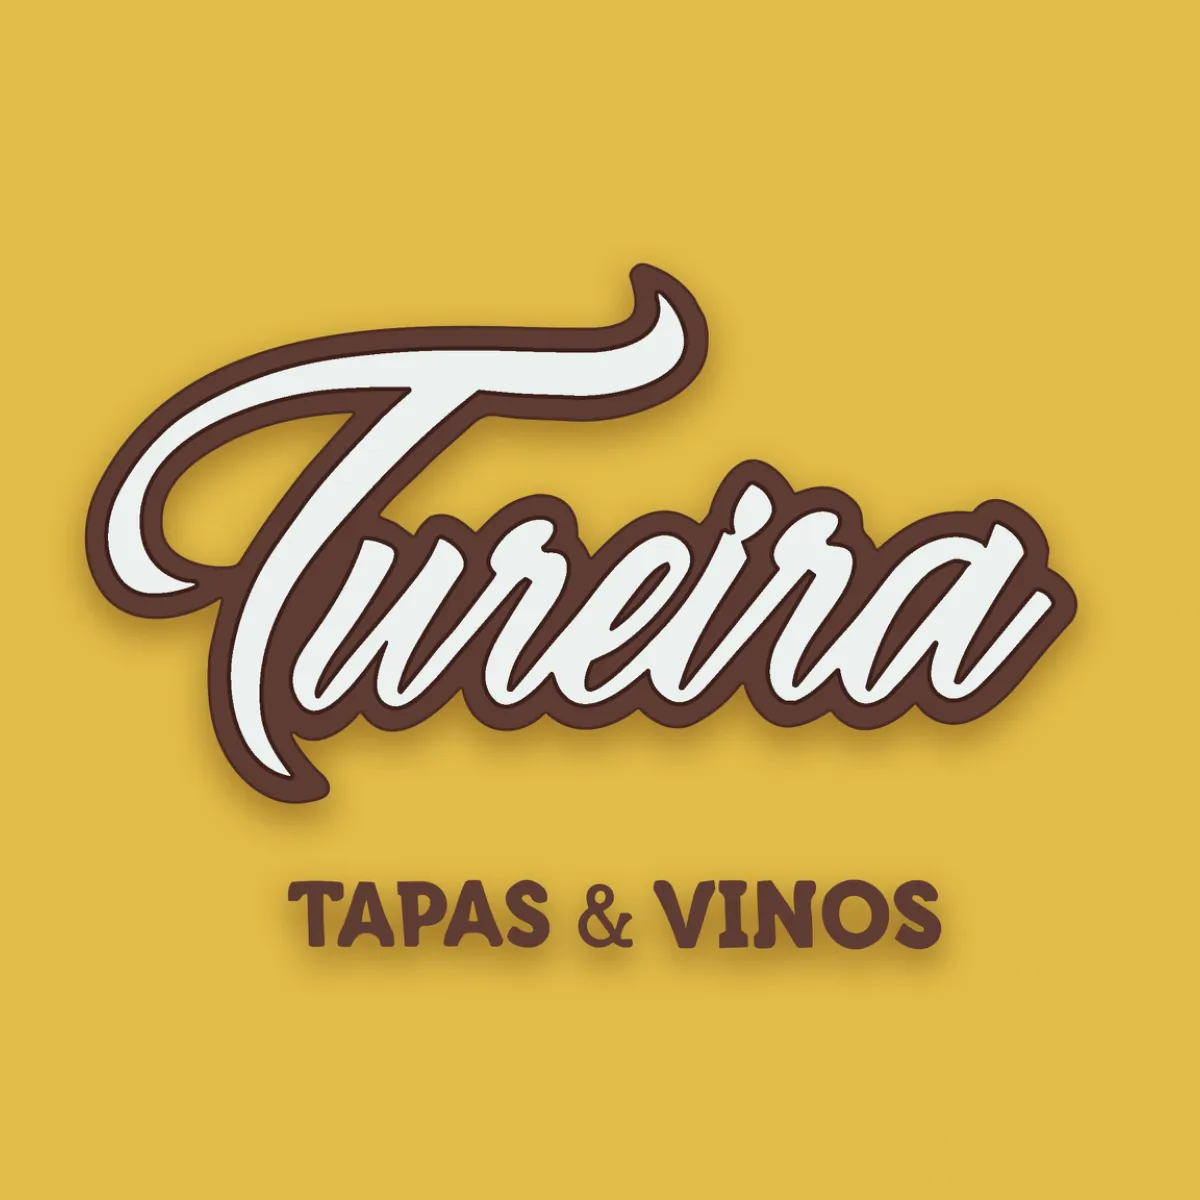 Tureira “Vinos & Tapas”